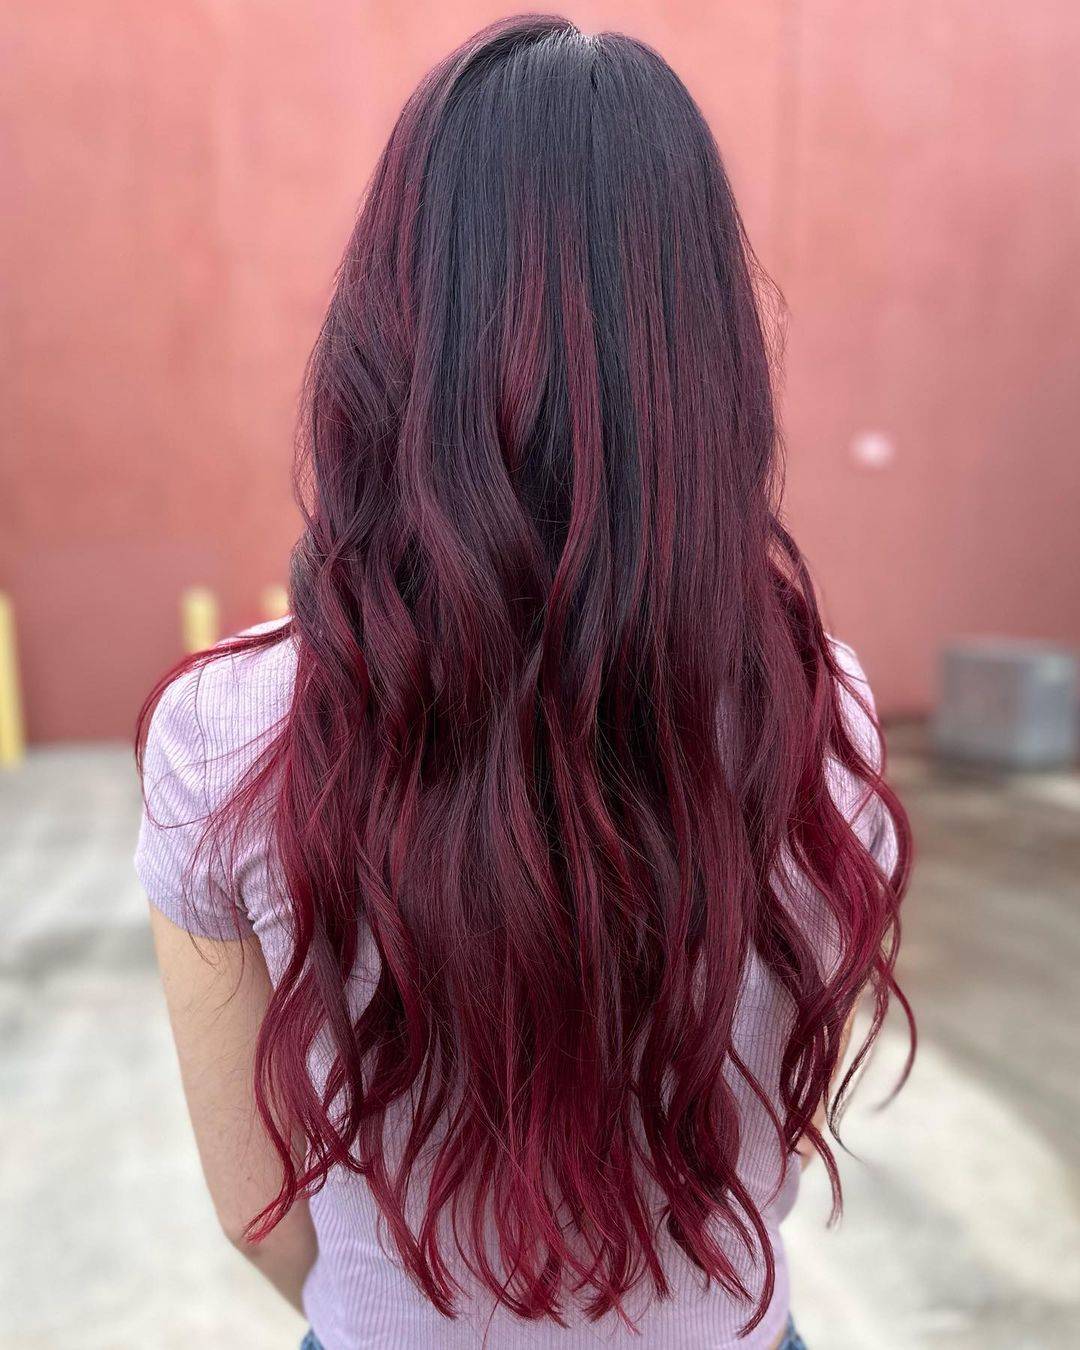 Burgundy hair color 199 burgundy hair color | burgundy hair color for women | burgundy hair color highlights Burgundy Hair Color